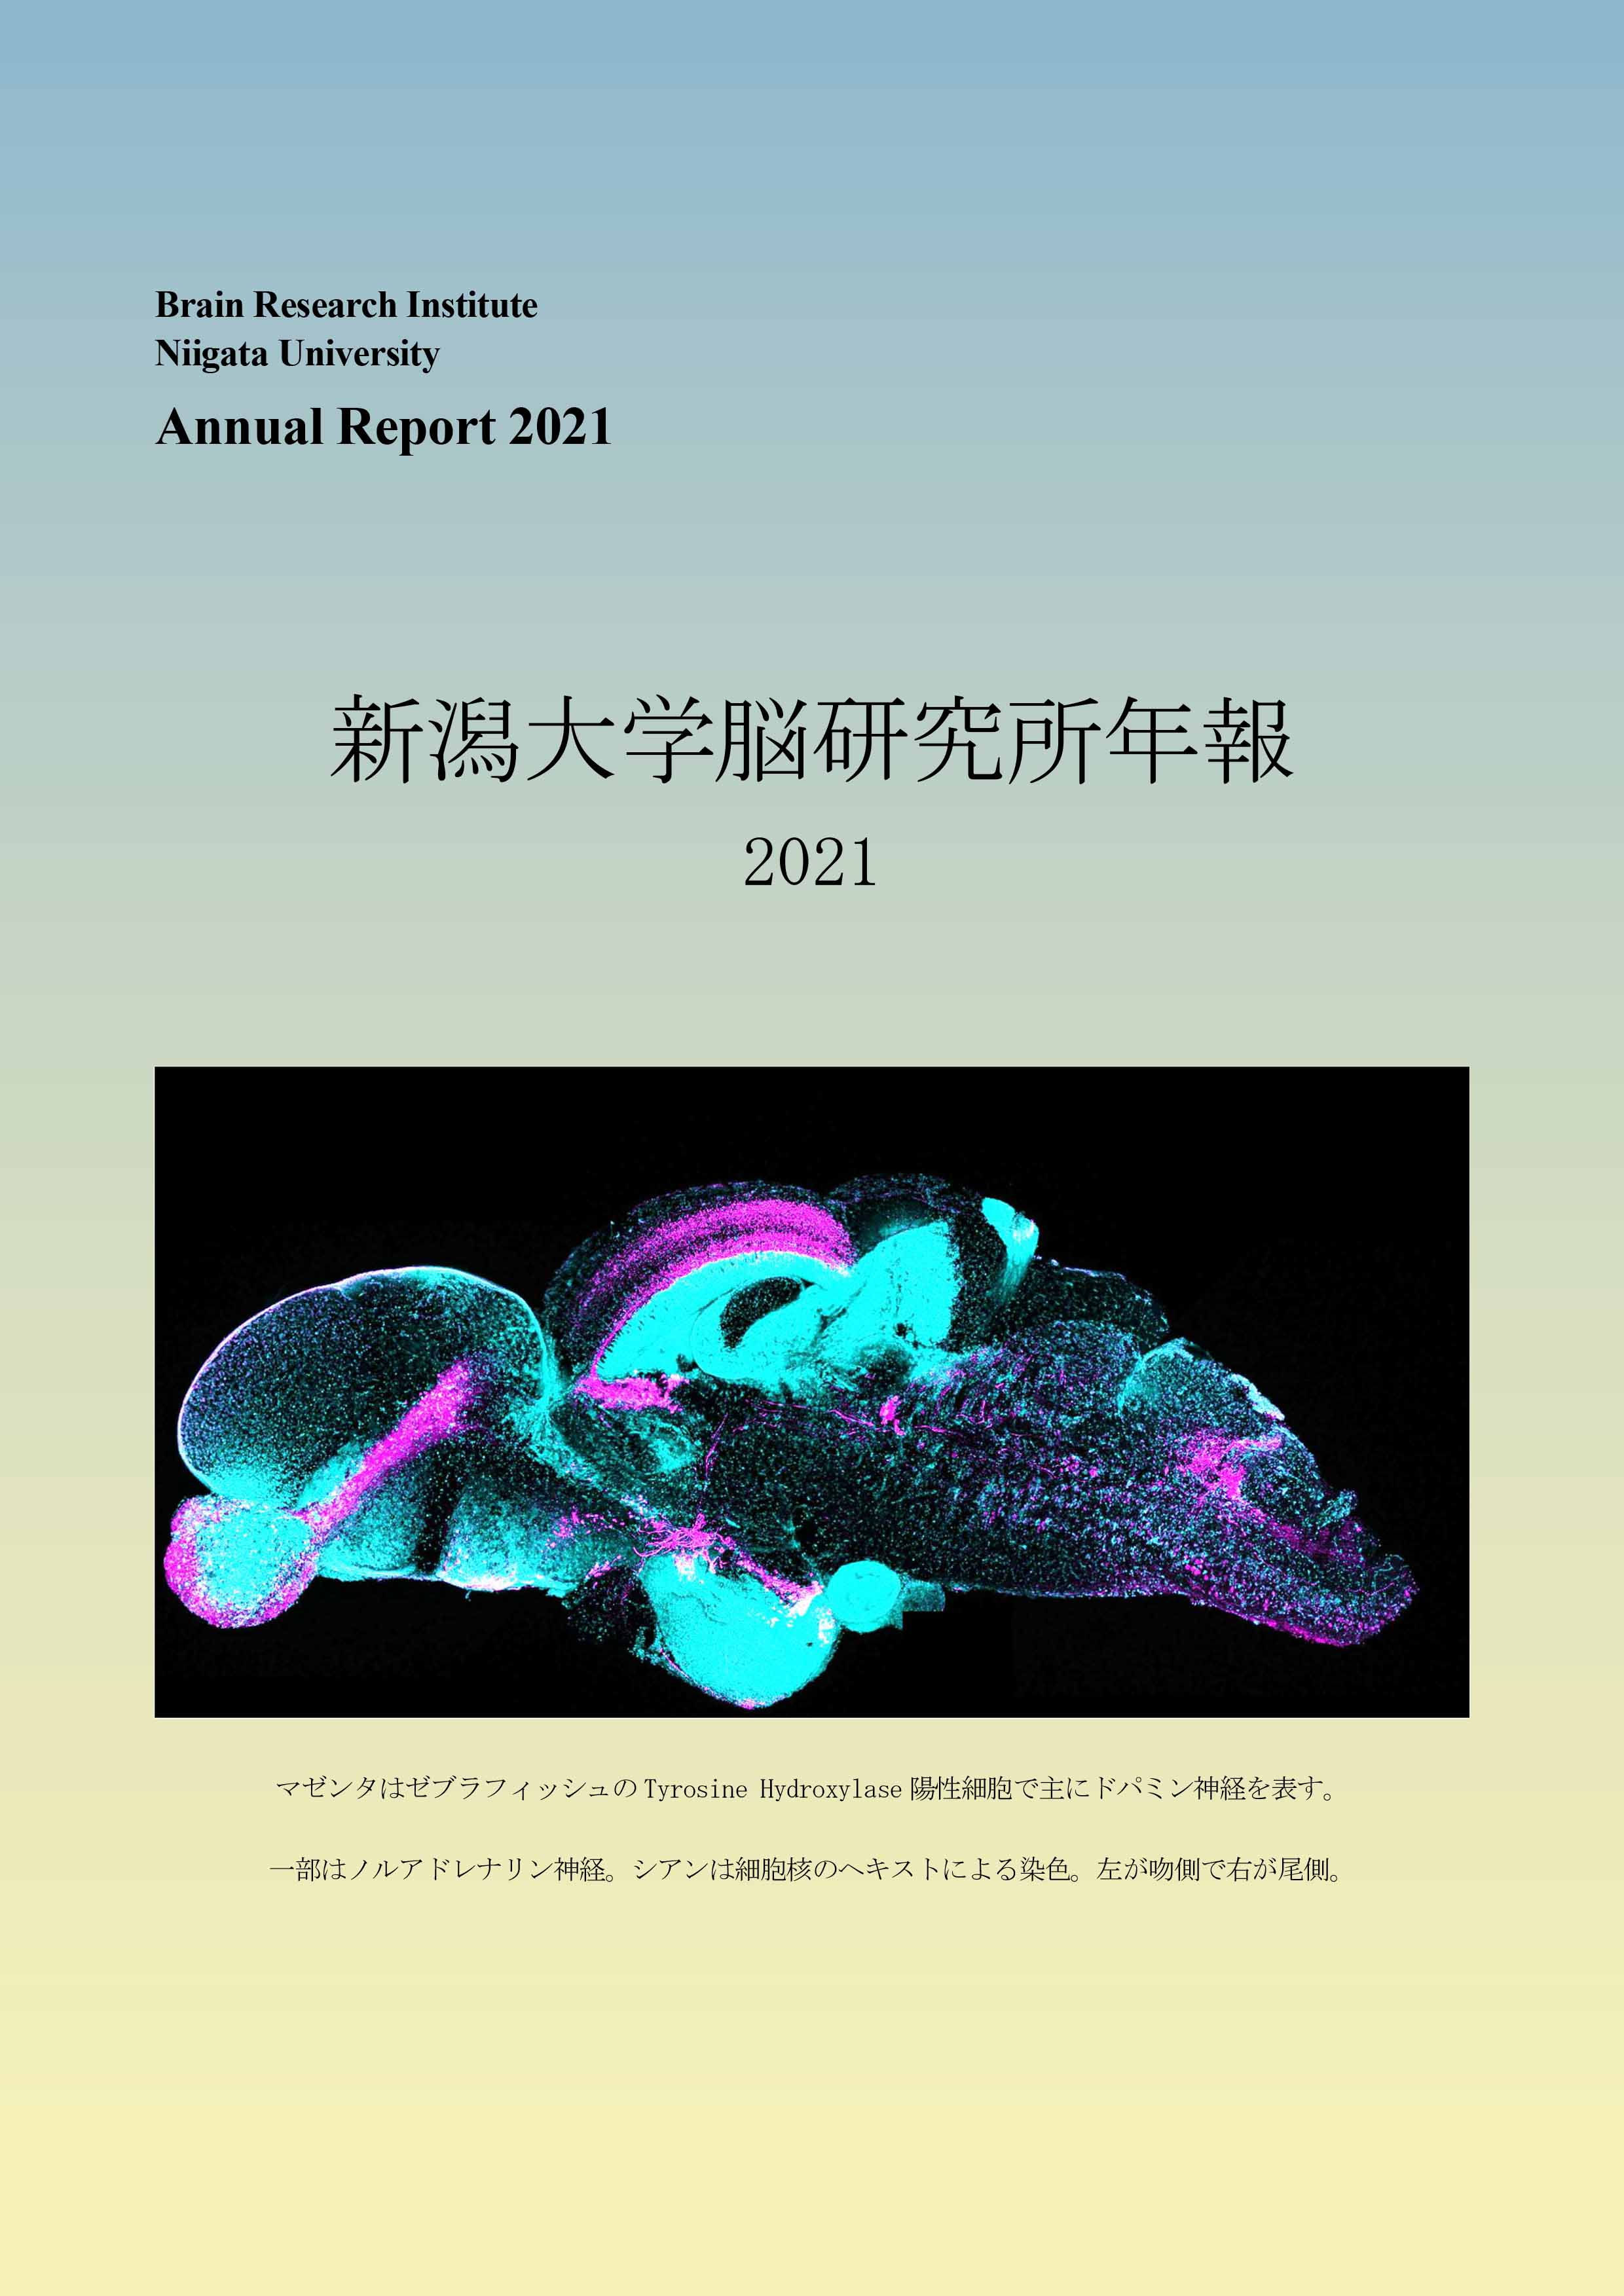 BRI Annual Report 2021